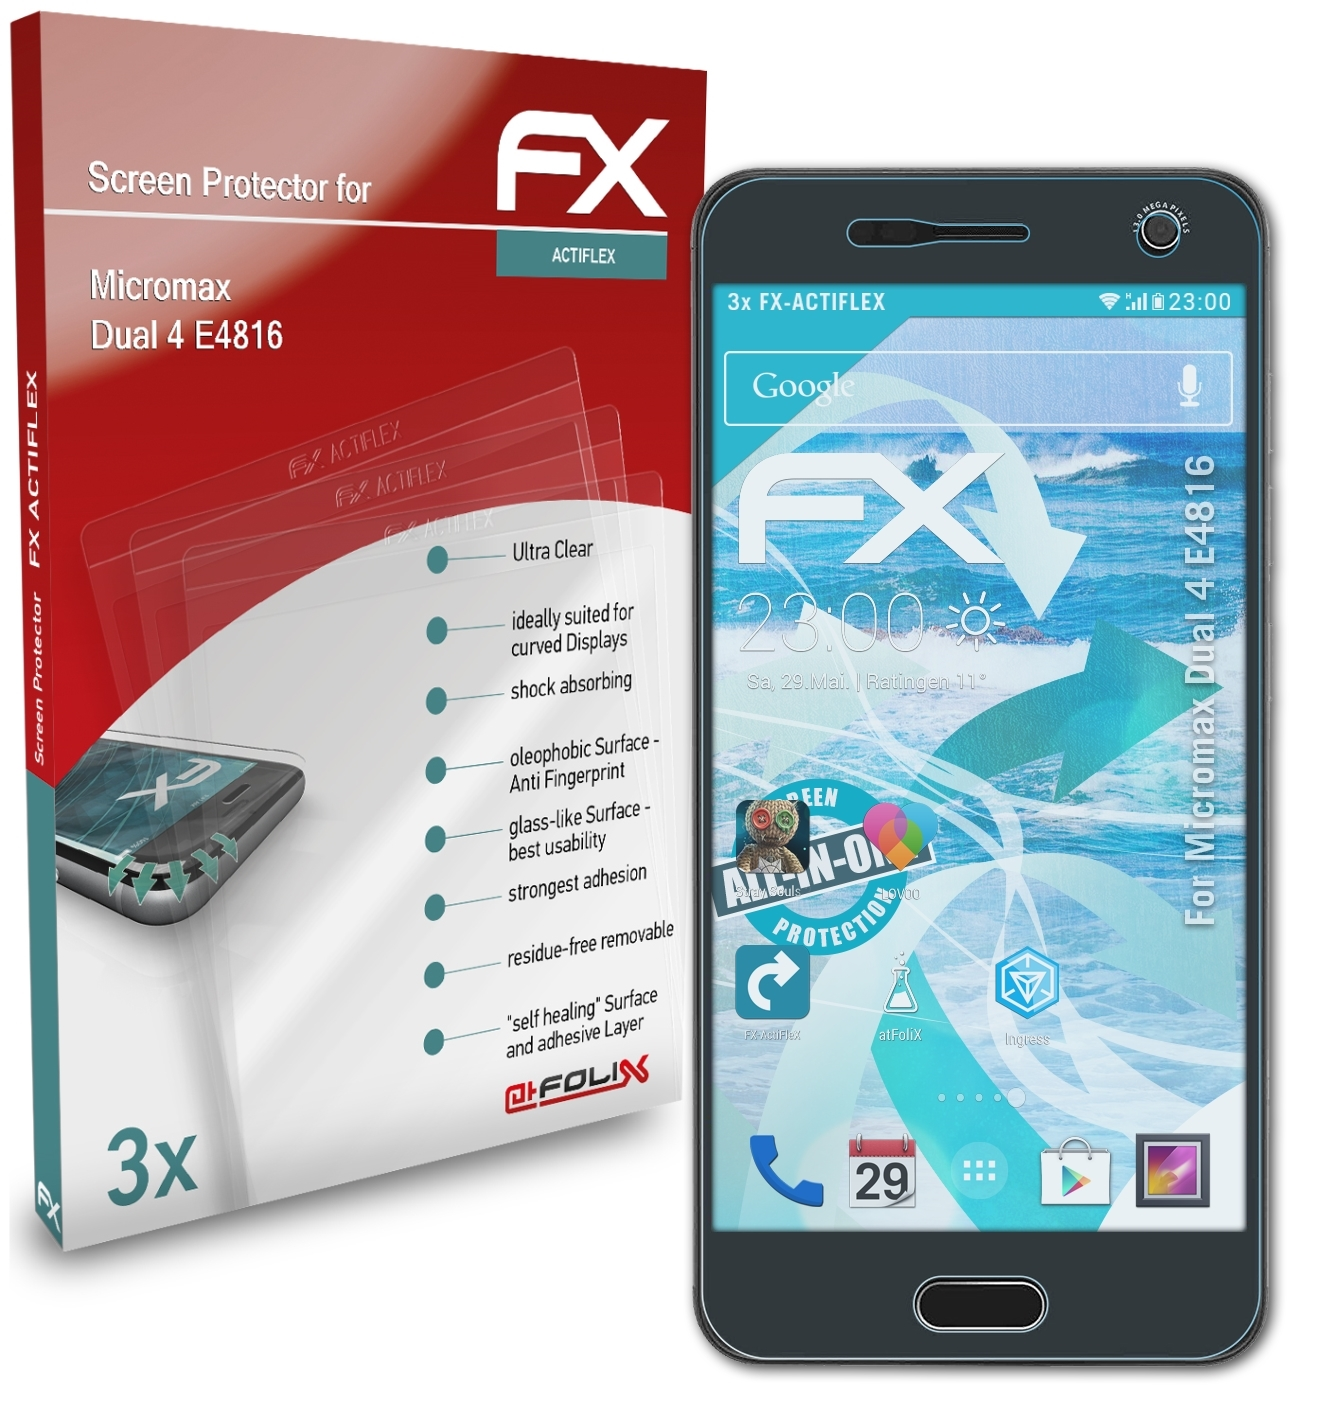 Dual ATFOLIX 4 FX-ActiFleX Micromax (E4816)) 3x Displayschutz(für